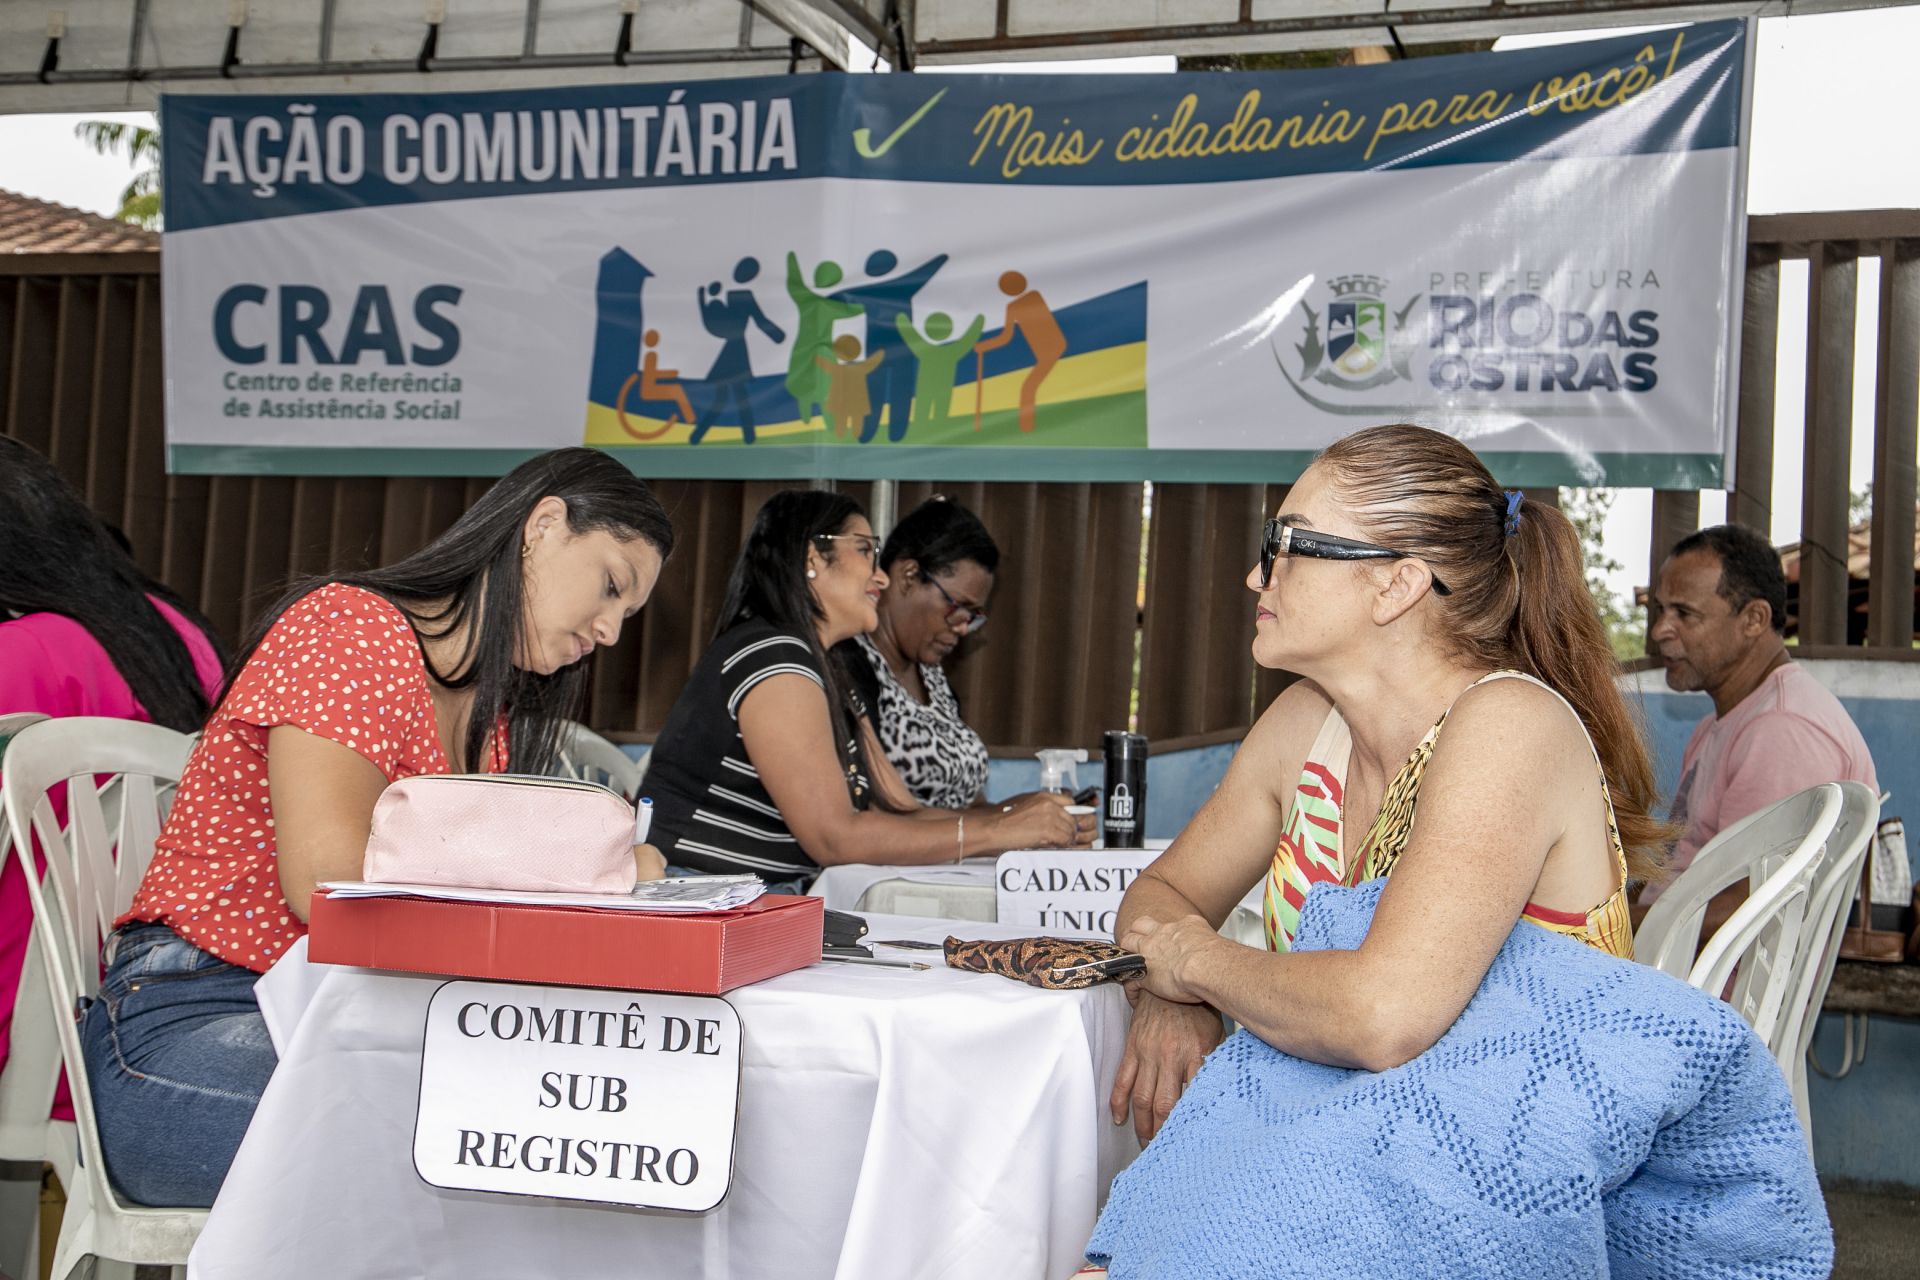 Rocha Leão recebe serviços gratuitos por meio da Ação Comunitária nesta quarta, 23